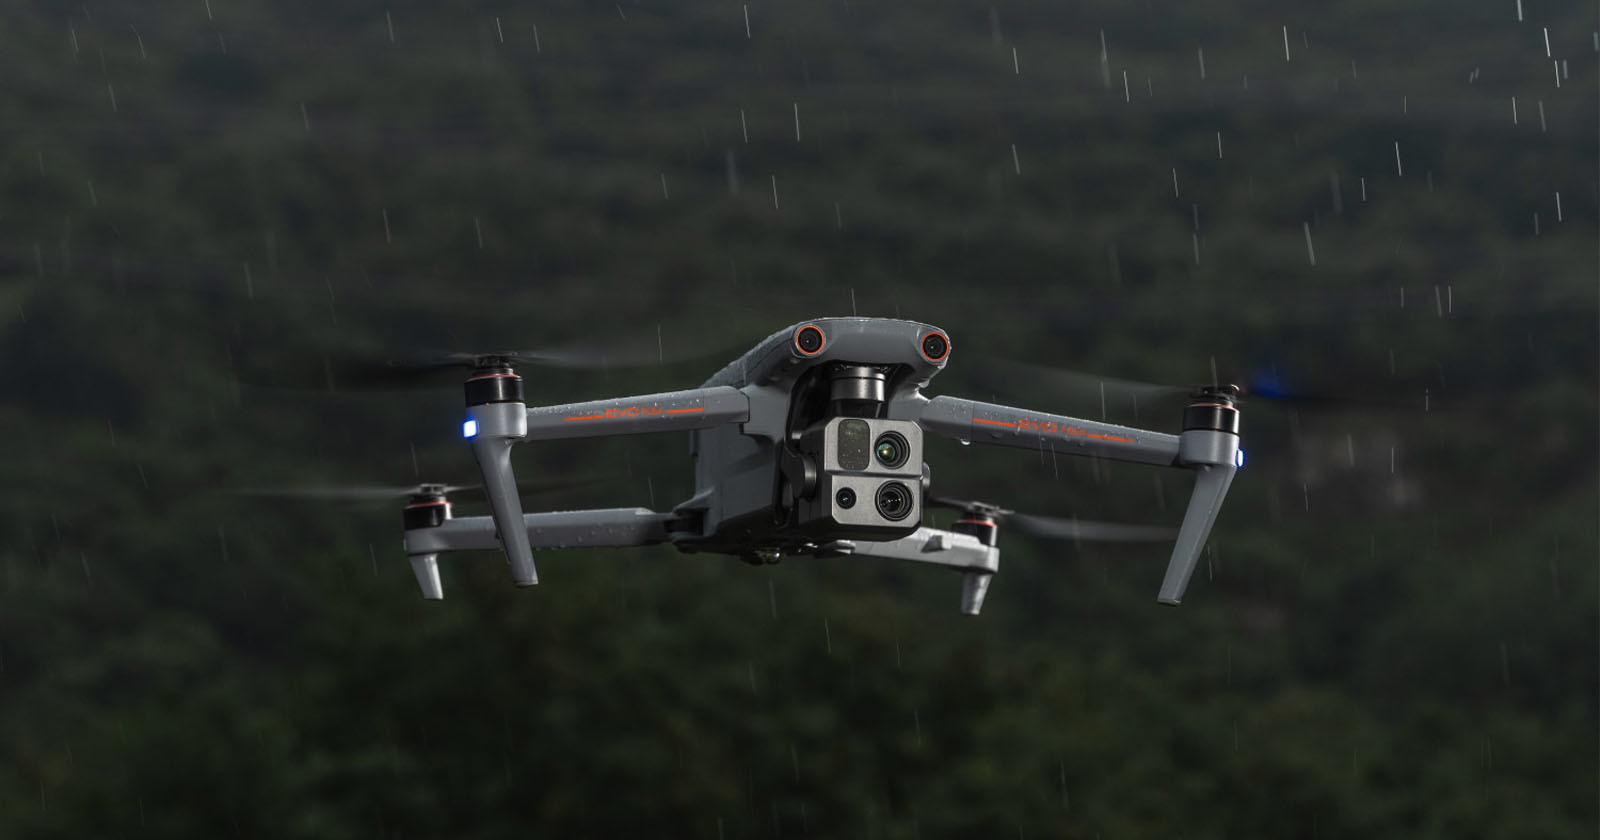  autel evo max drone has three cameras 